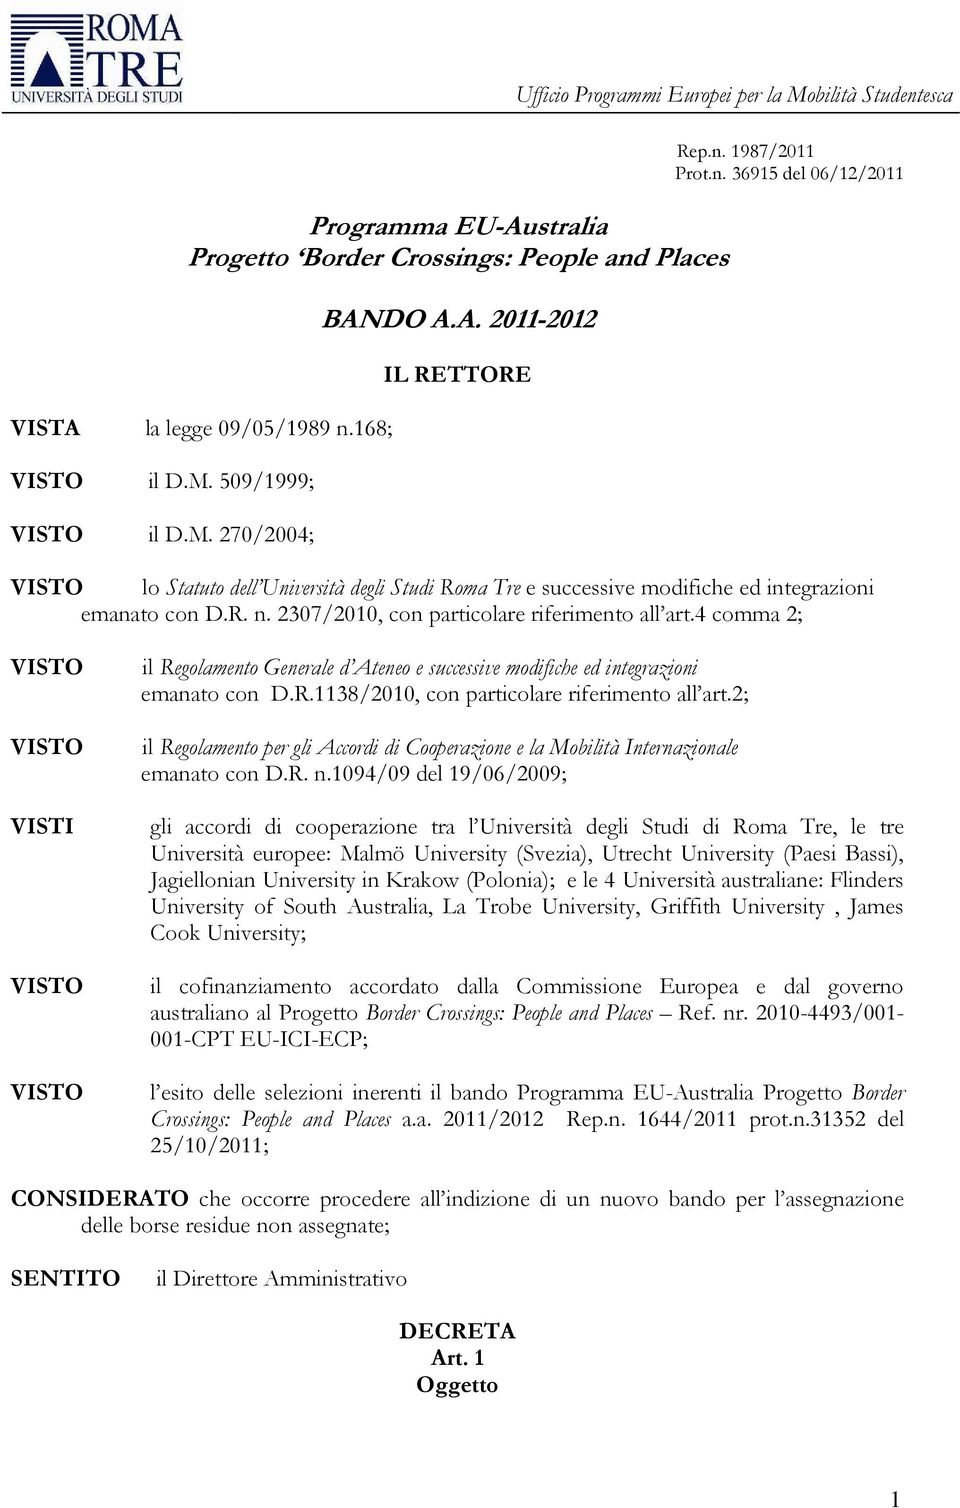 4 comma 2; VISTI il Regolamento Generale d Ateneo e successive modifiche ed integrazioni emanato con D.R.1138/2010, con particolare riferimento all art.